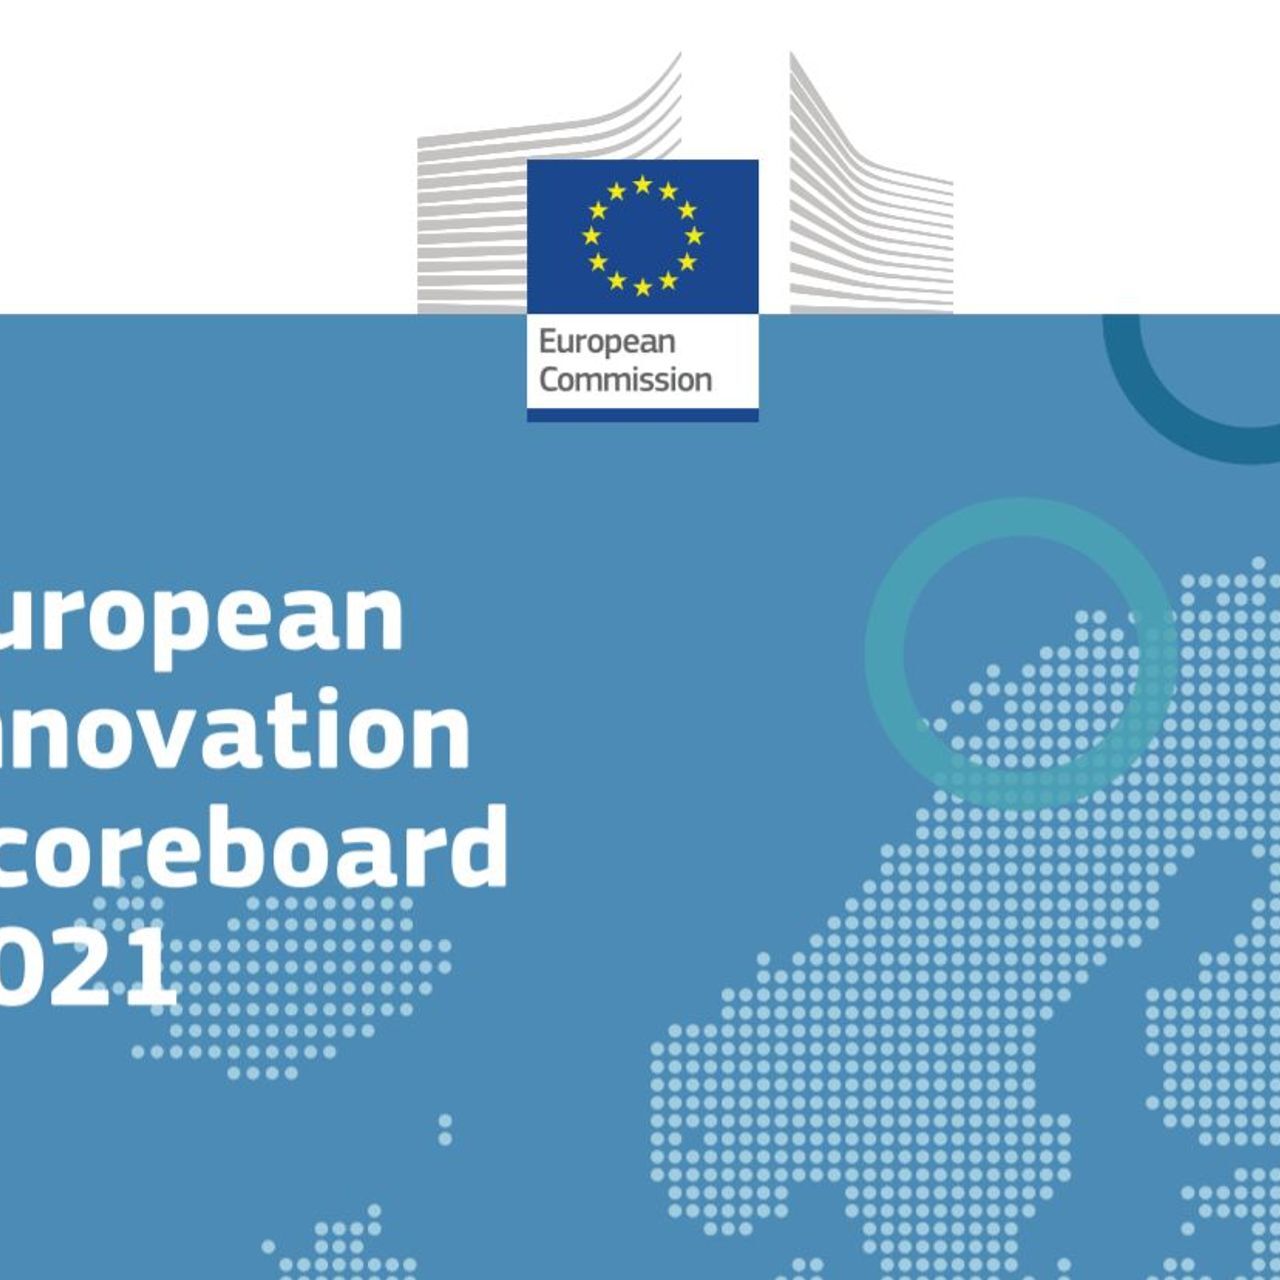 بالای جلد جدول امتیازات نوآوری اروپا 2021